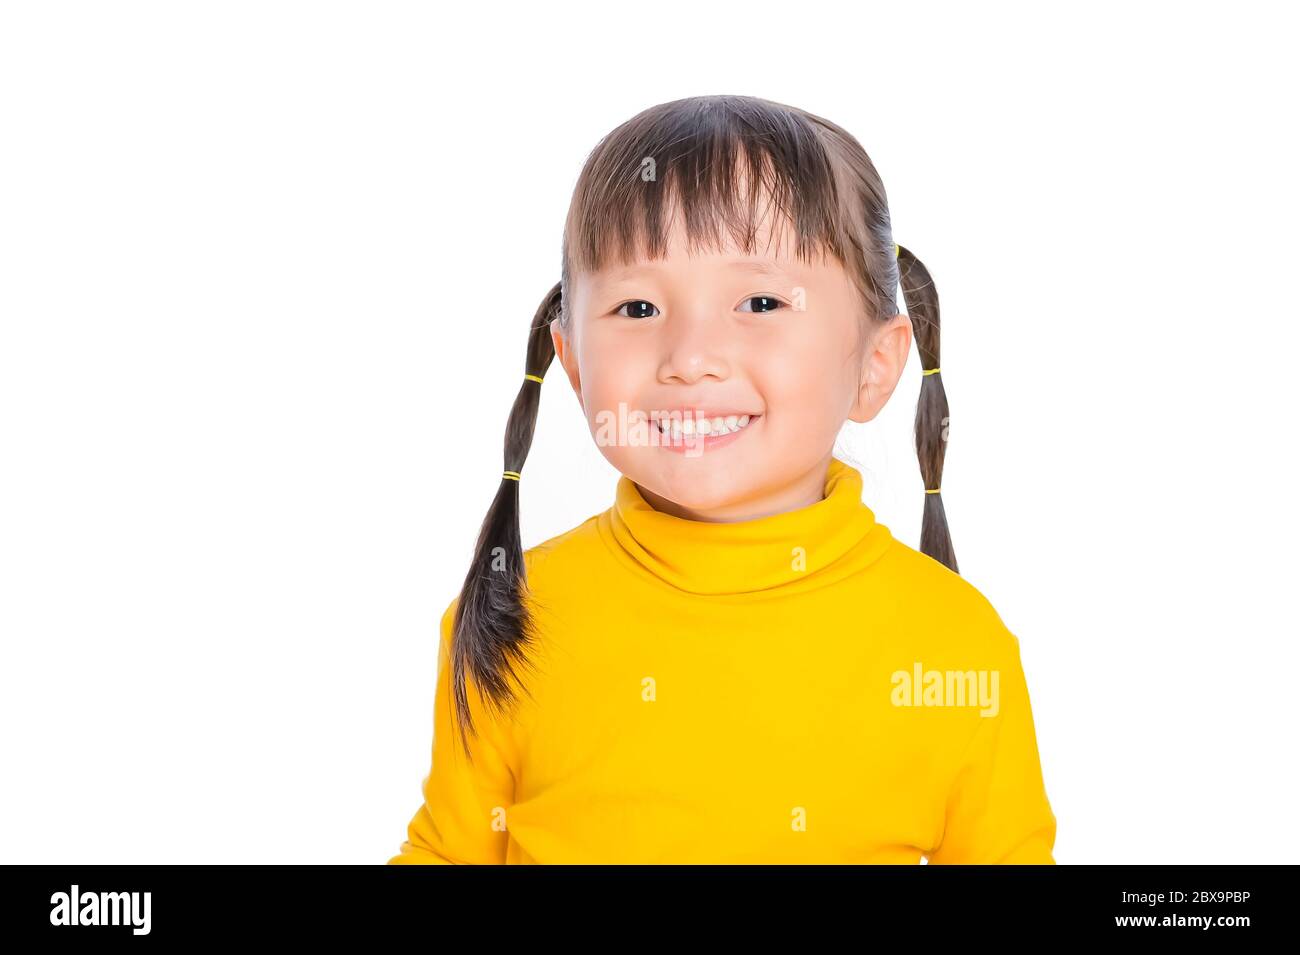 Asiatische lächelnd kleines Mädchen Freude positive Emotionen und glückliche Kindheit Konzept auf weißem Hintergrund Stockfoto